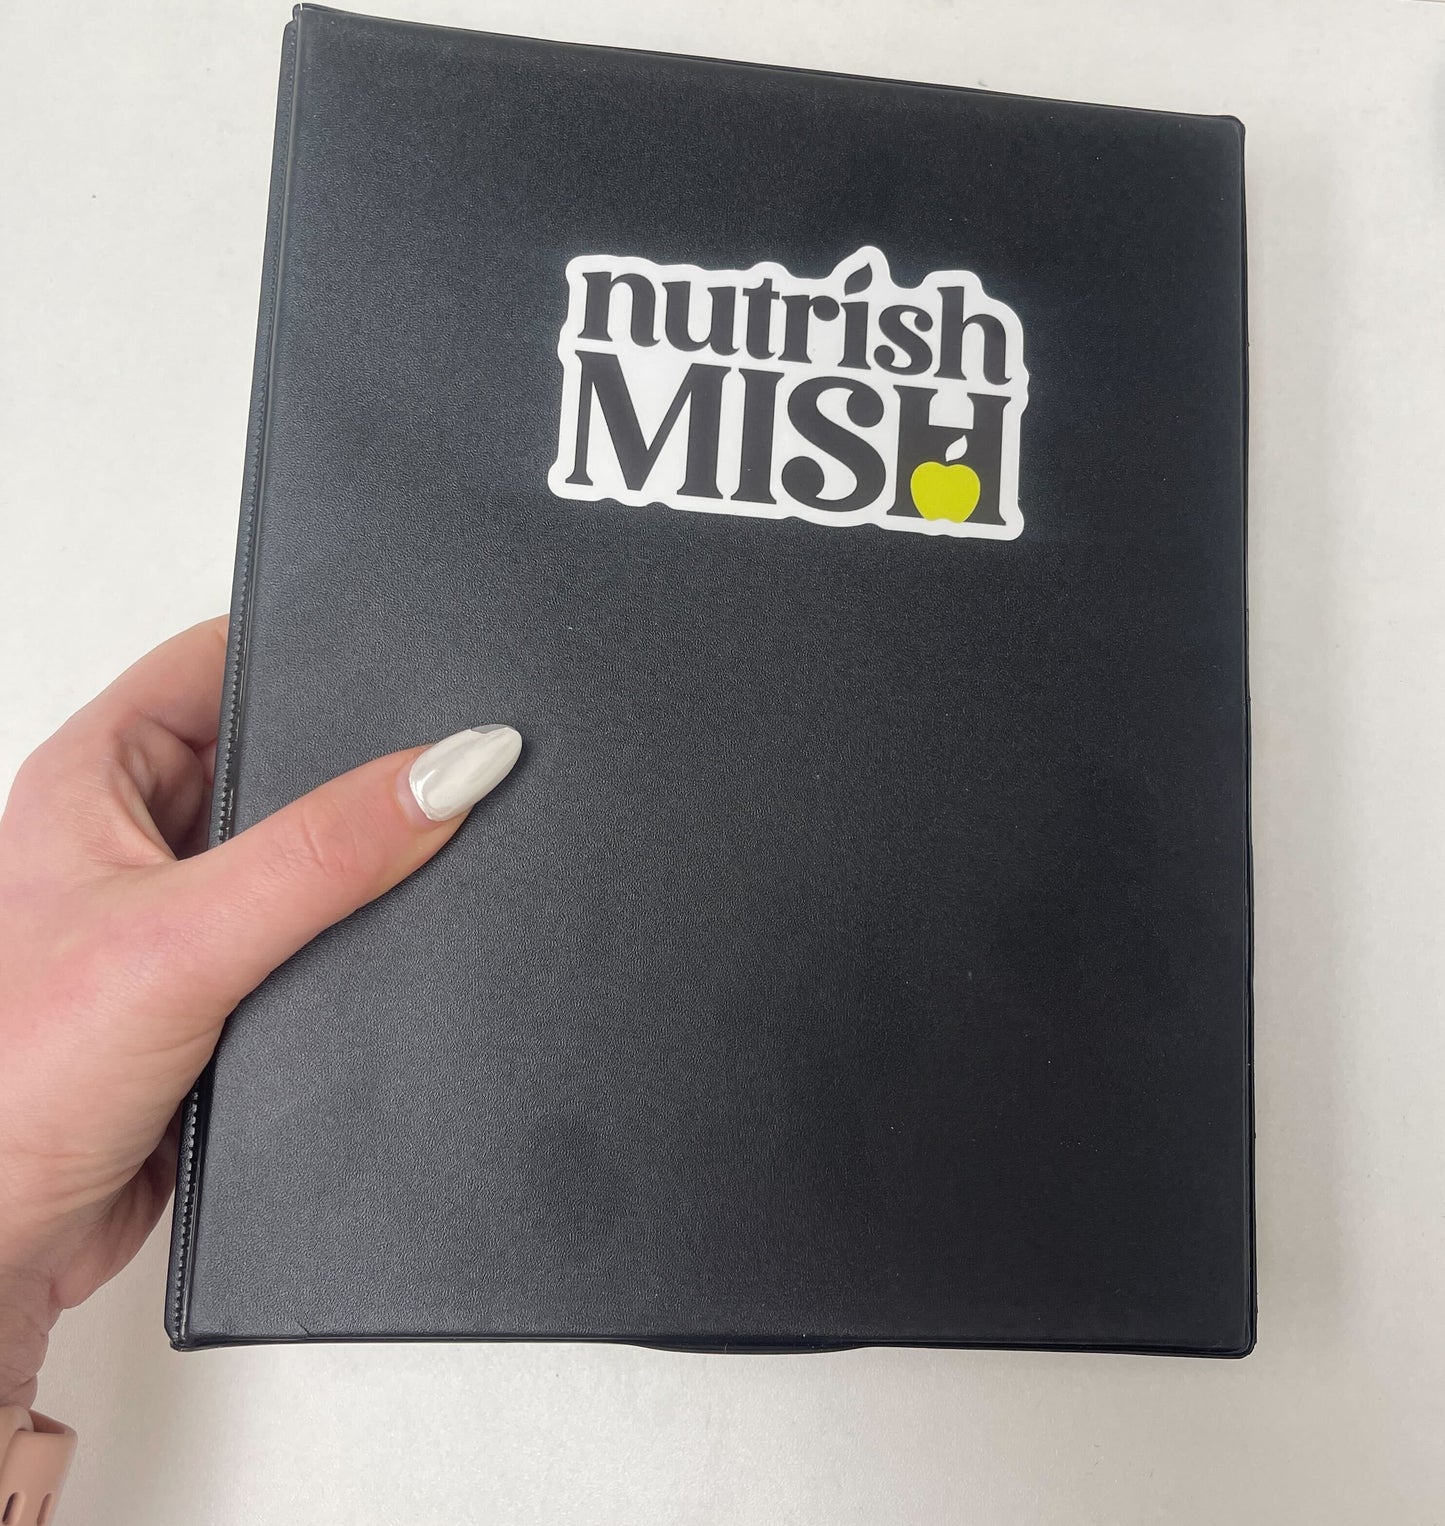 Nutrish Mish Signature Recipes Edition 1